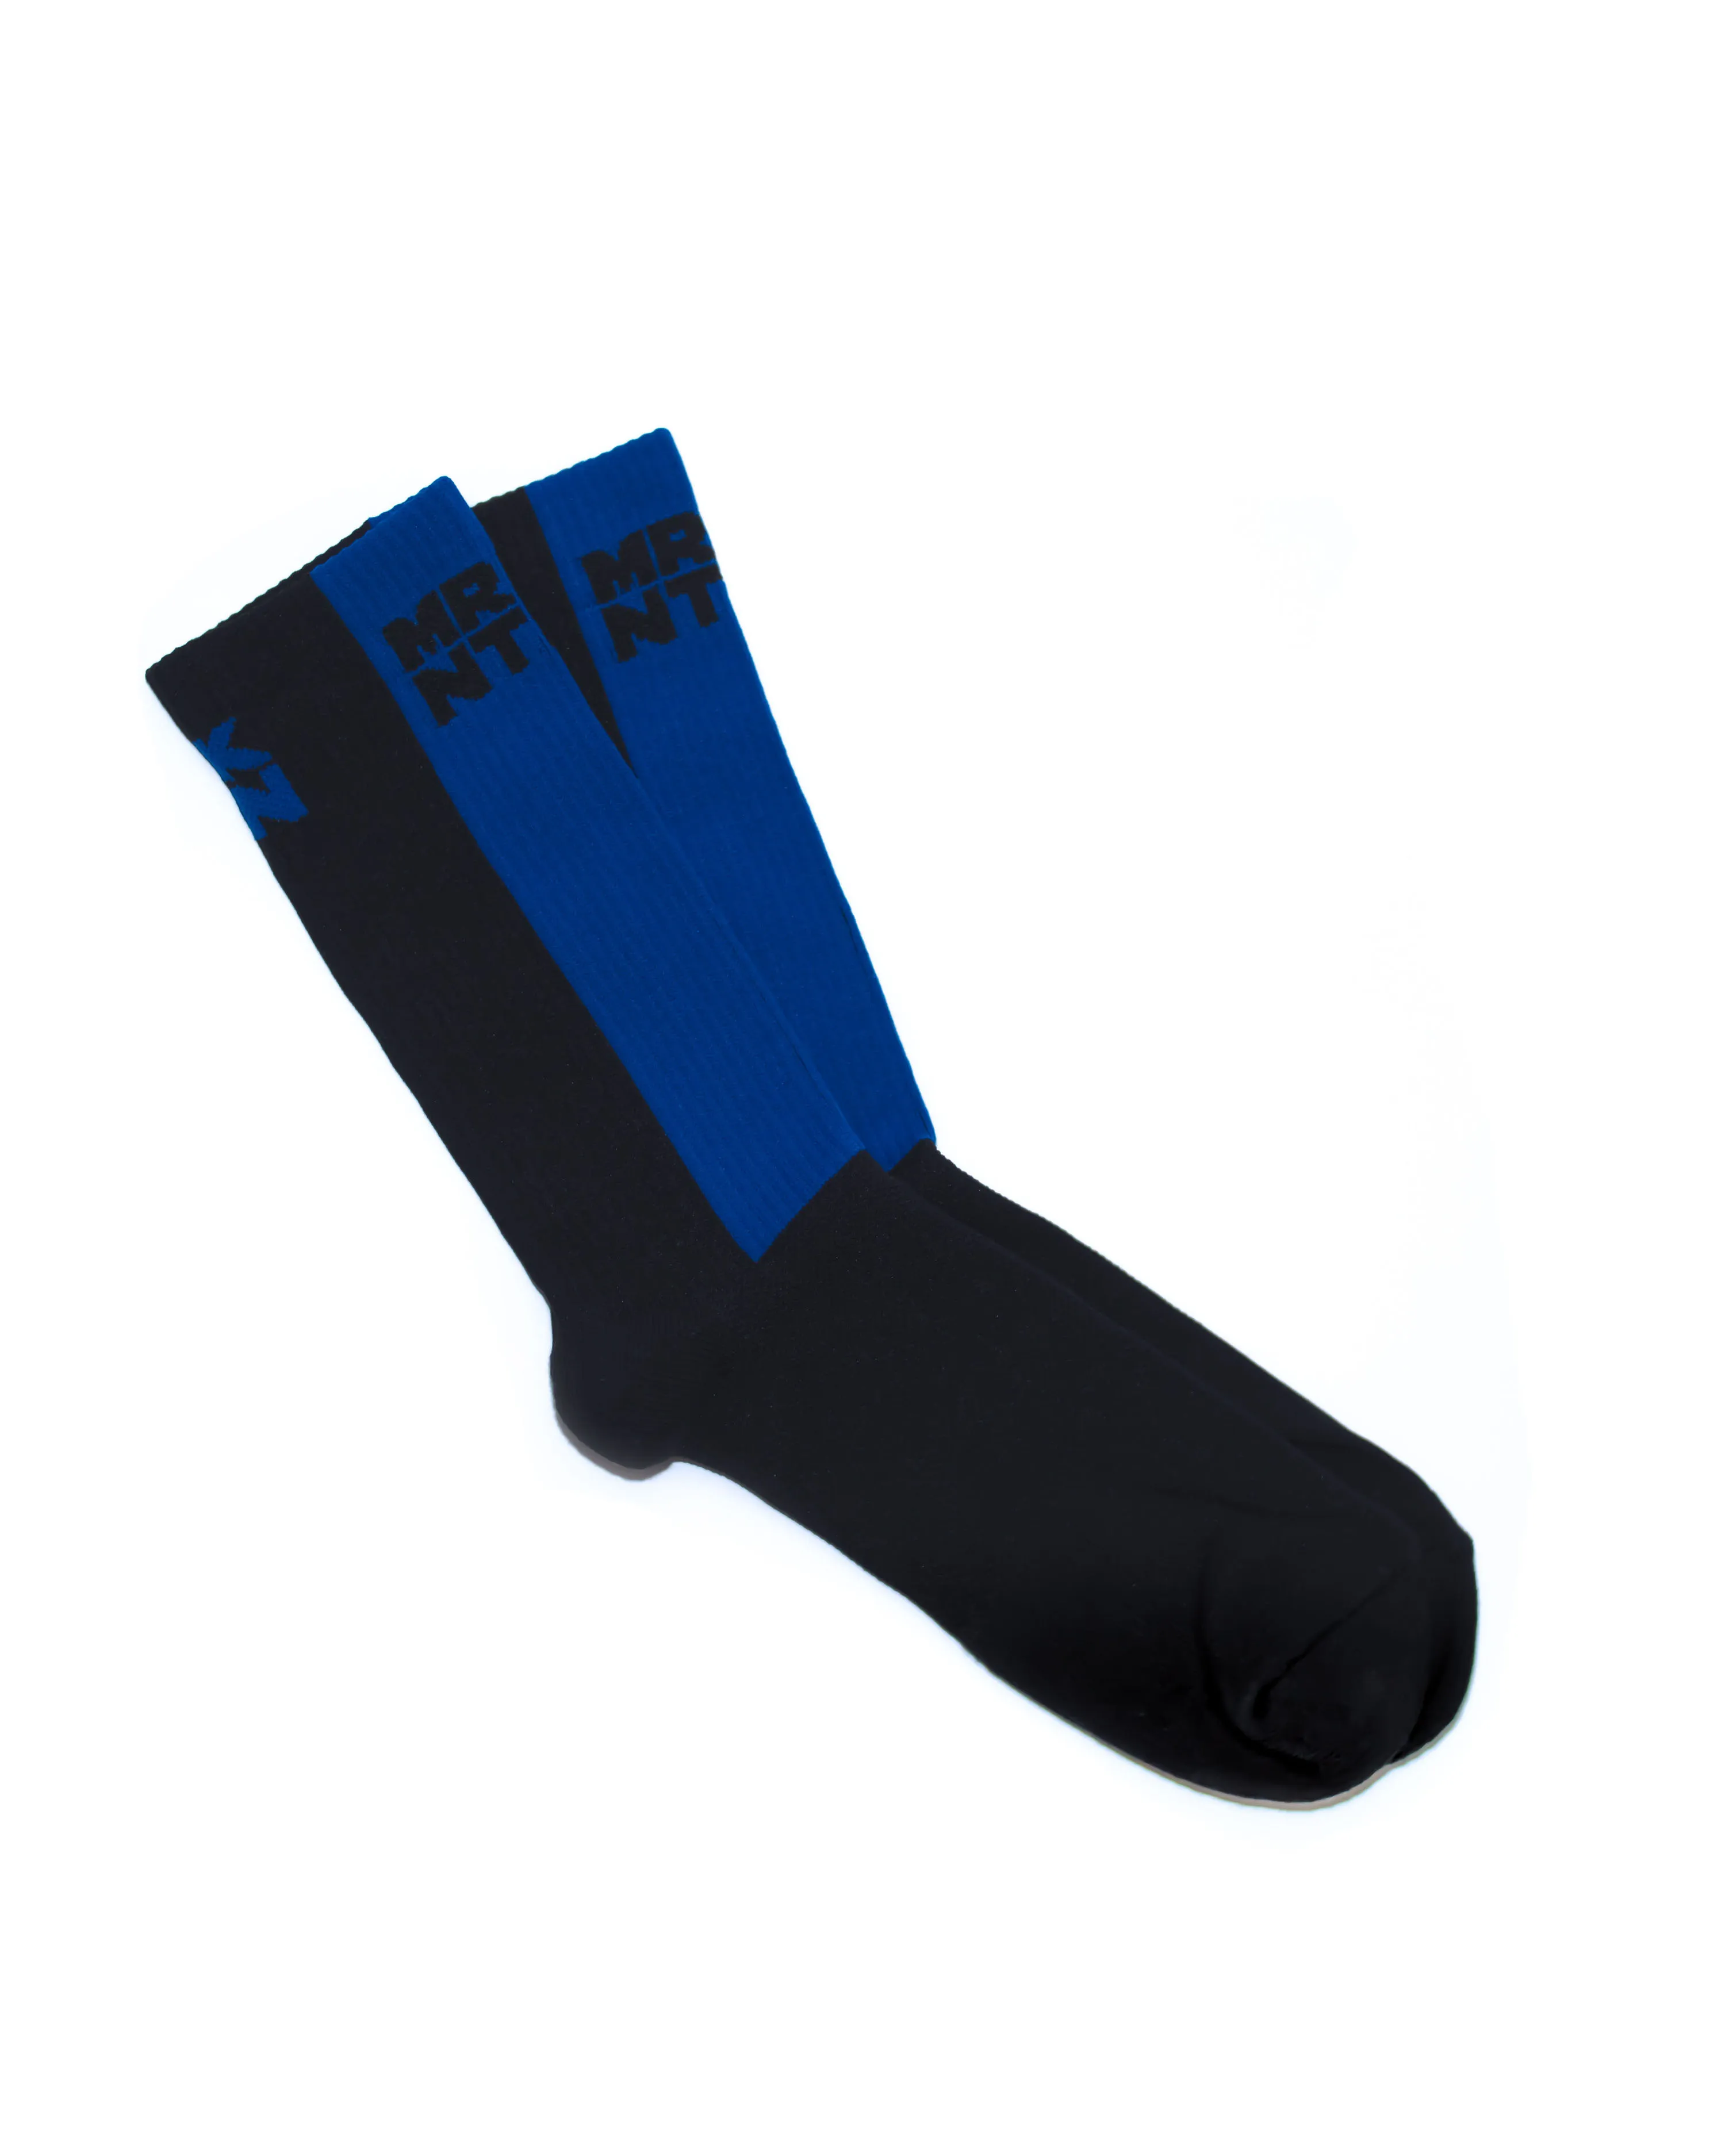 Les chaussettes noires et bleues de MRKNTN